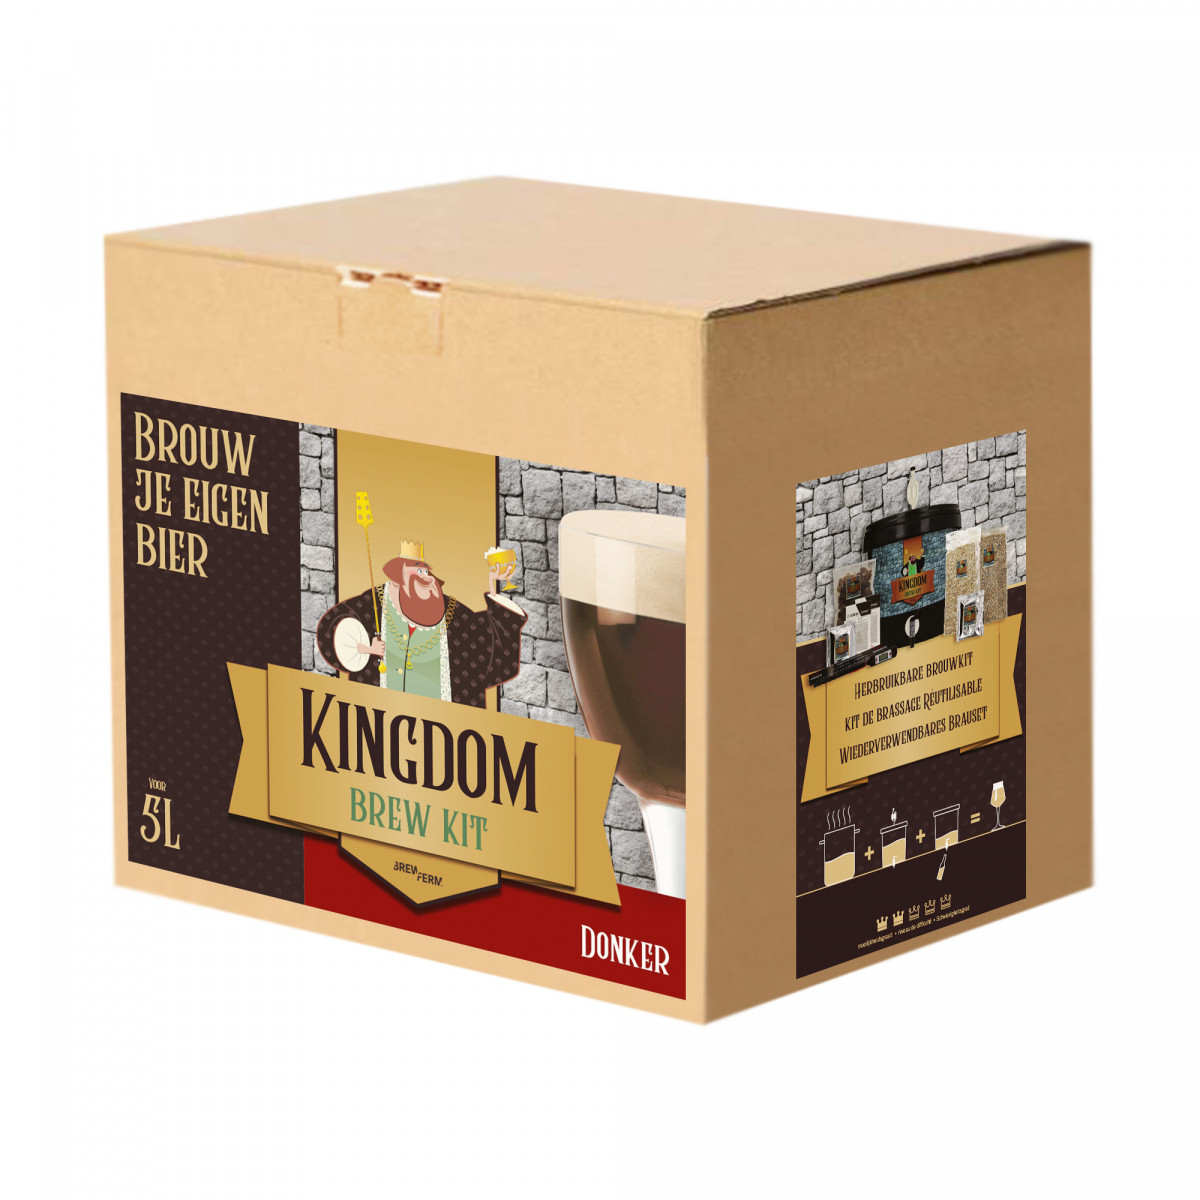 Kingdom Brew Kit - Donker